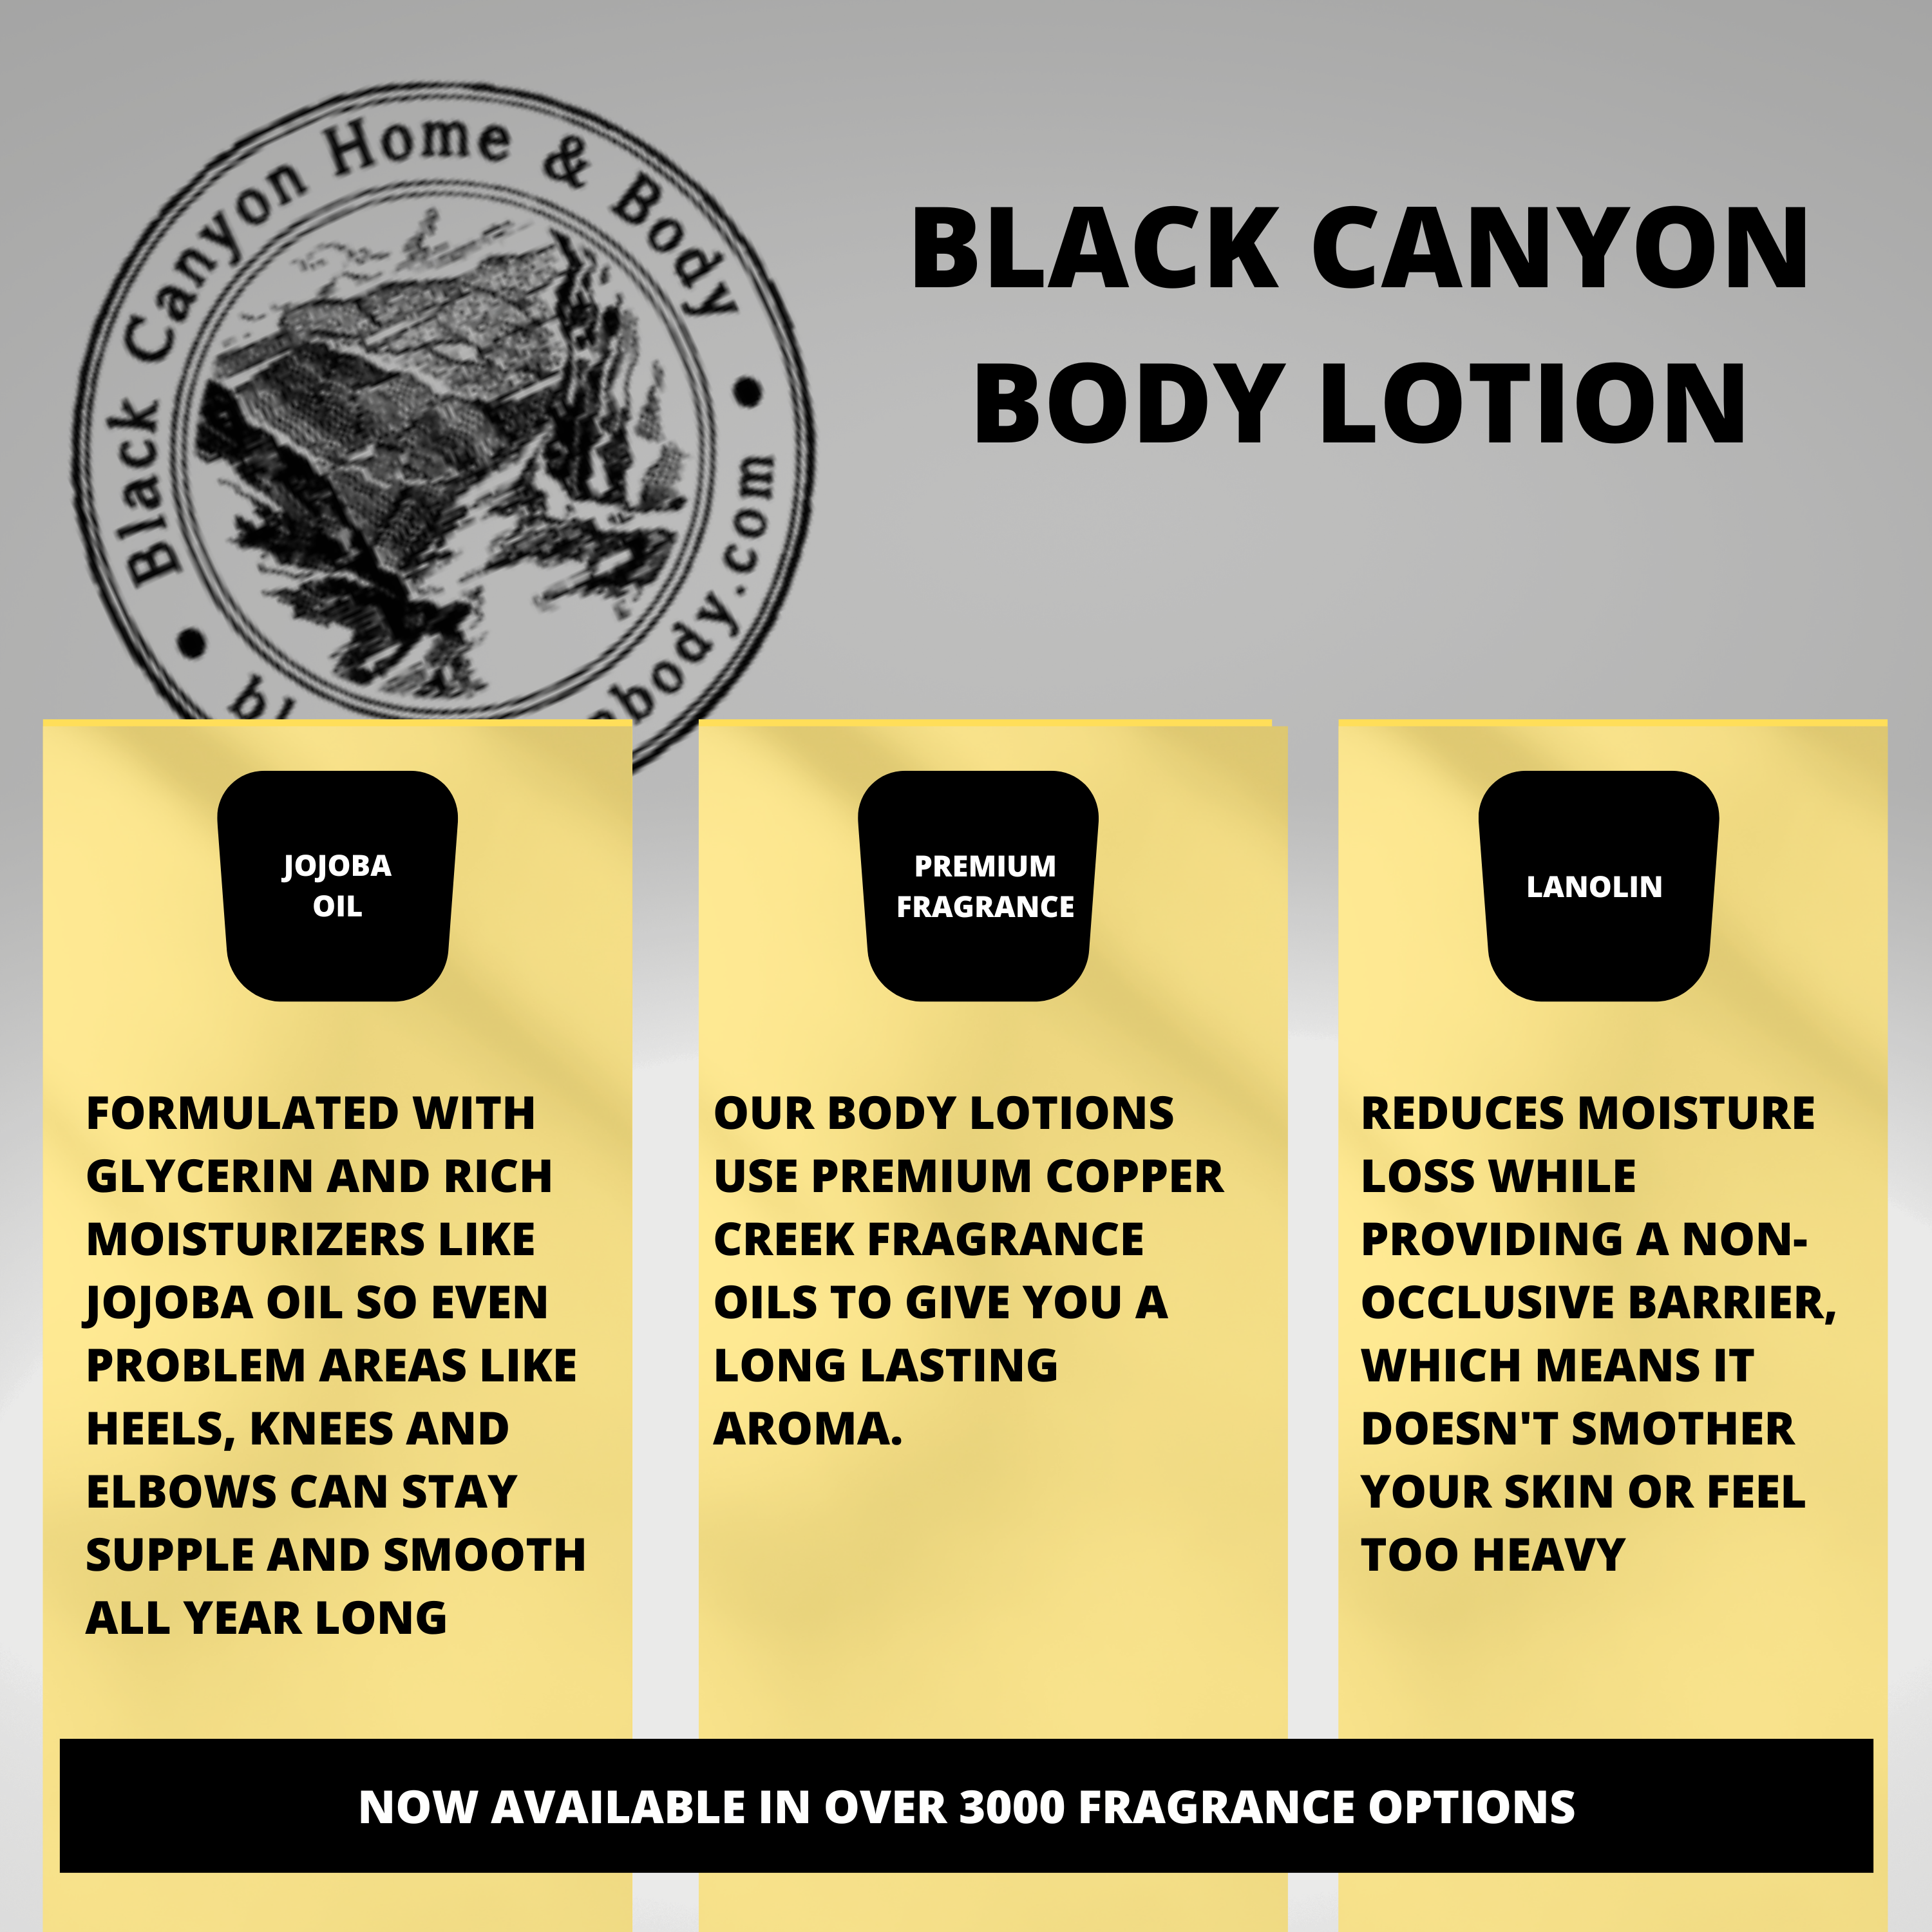 Black Canyon Amber Tuberose & Jasmine Scented Luxury Body Lotion with Lanolin and Jojoba Oil